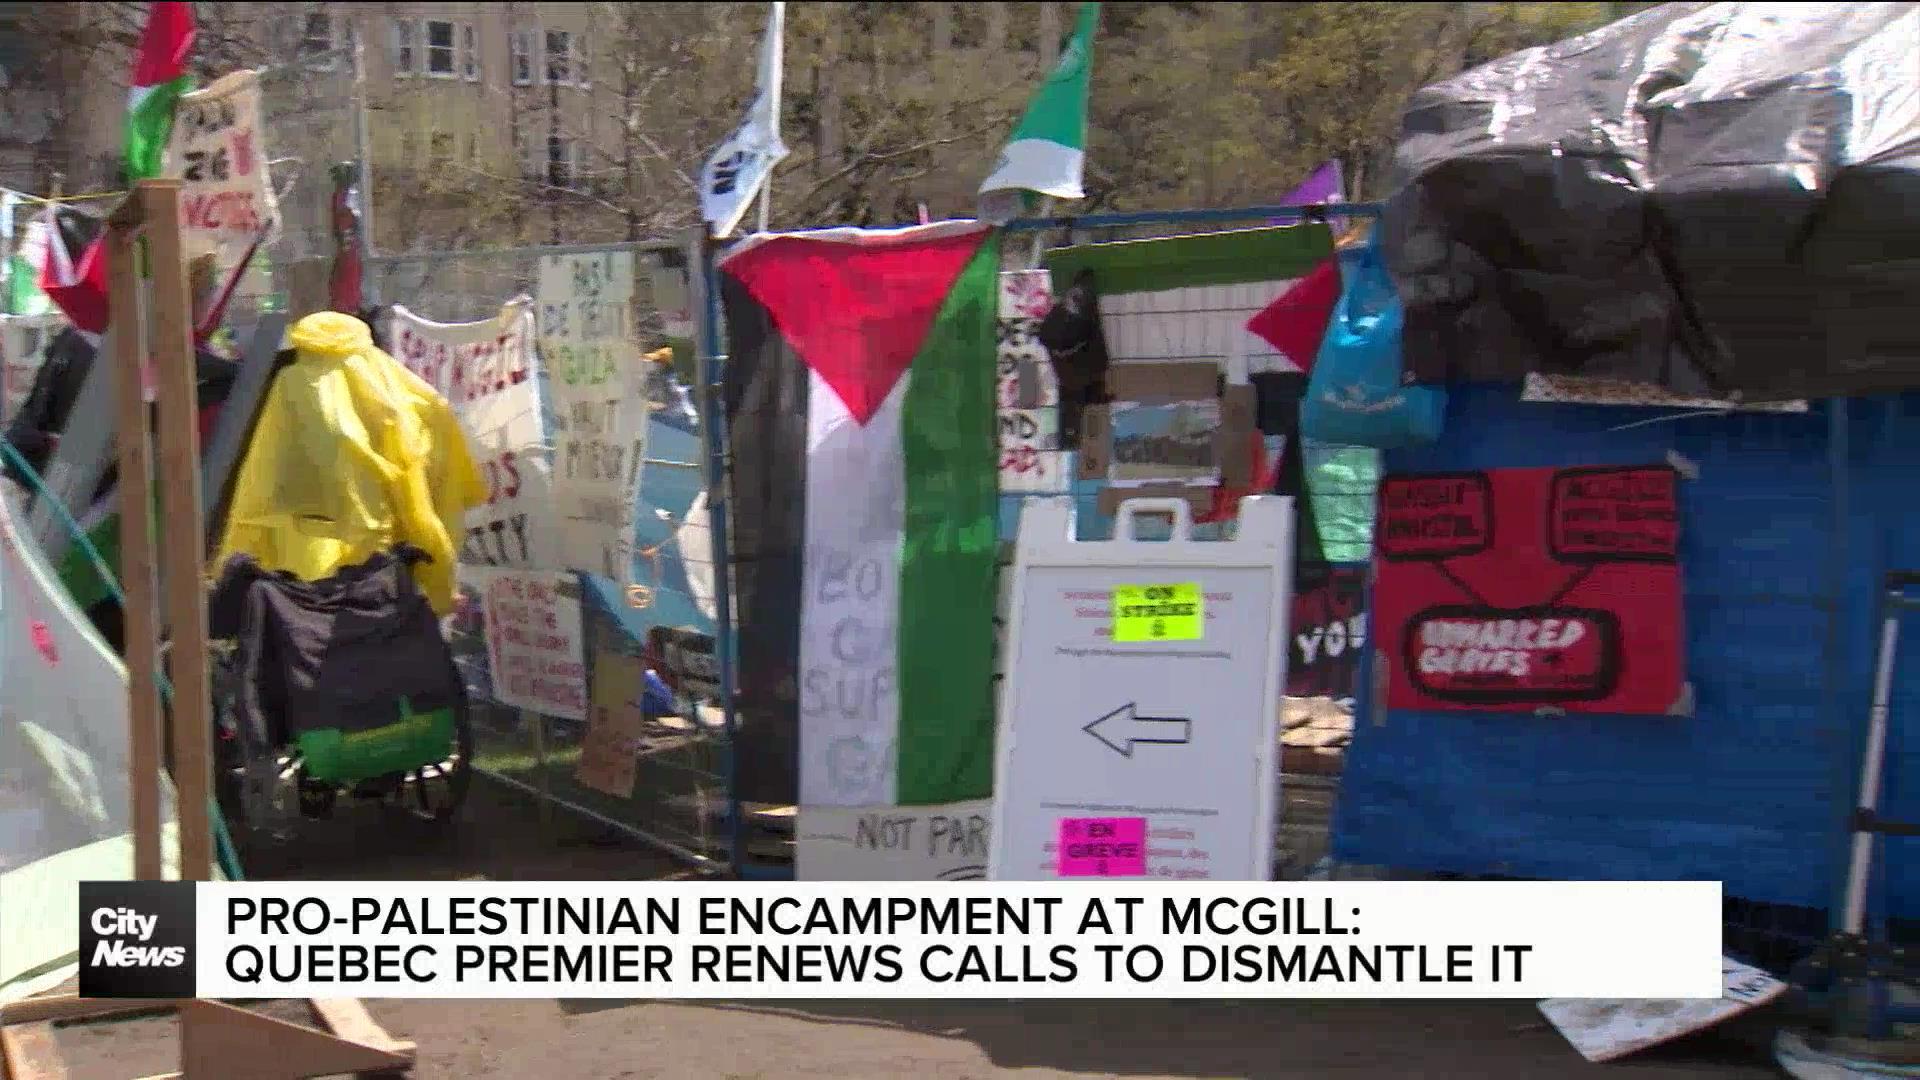 Quebec Premier wants pro-Palestinian encampment at McGill dismantled